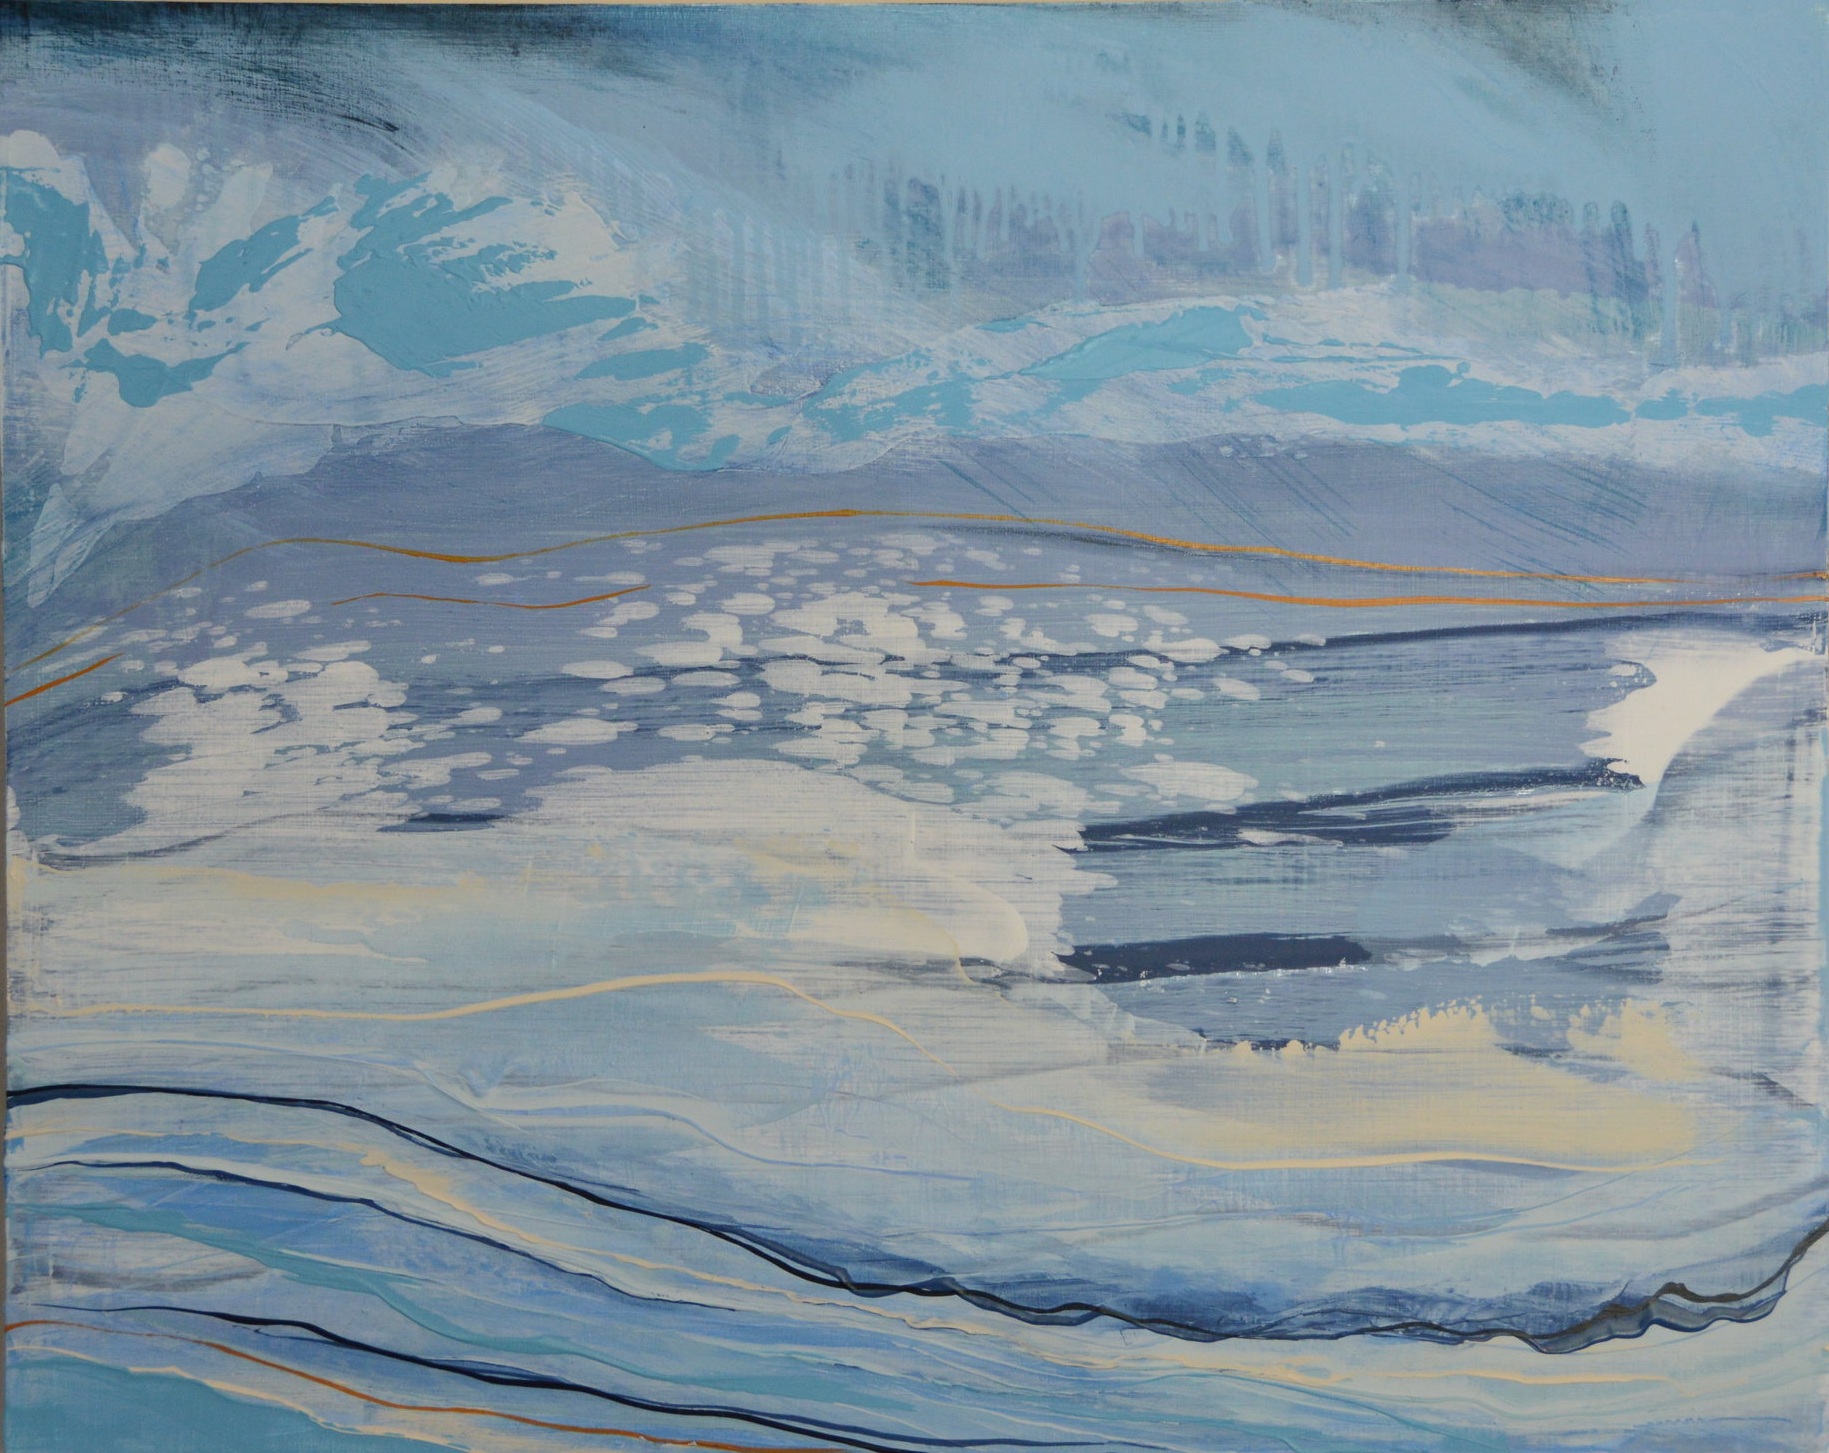   Ocean Surf II   20 x 16  Oil on Cradled Birch Panel 